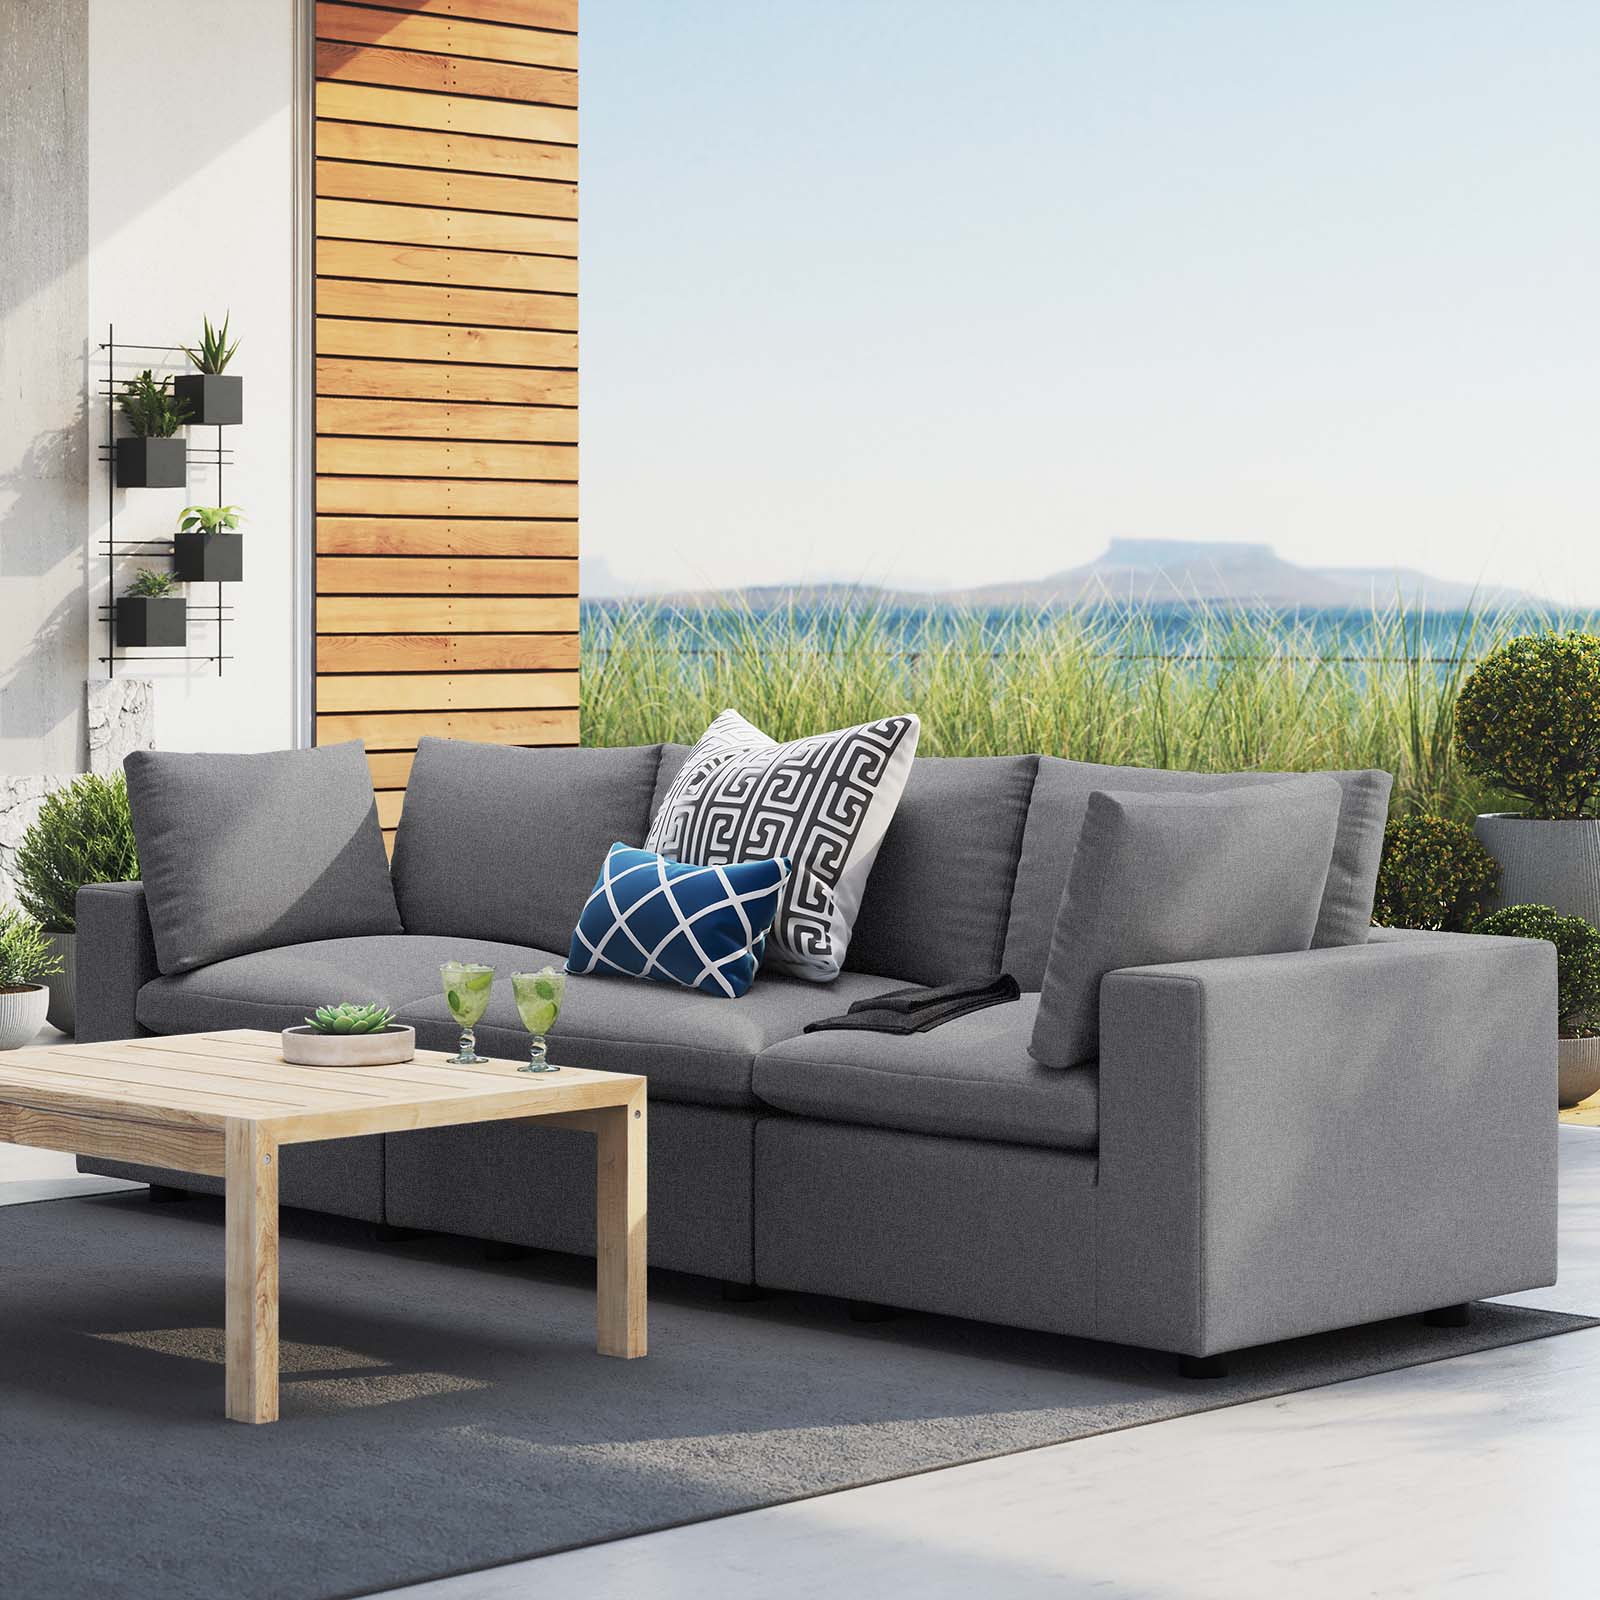 Modway Outdoor Sofas - Commix Sunbrella Outdoor Patio Sofa Gray